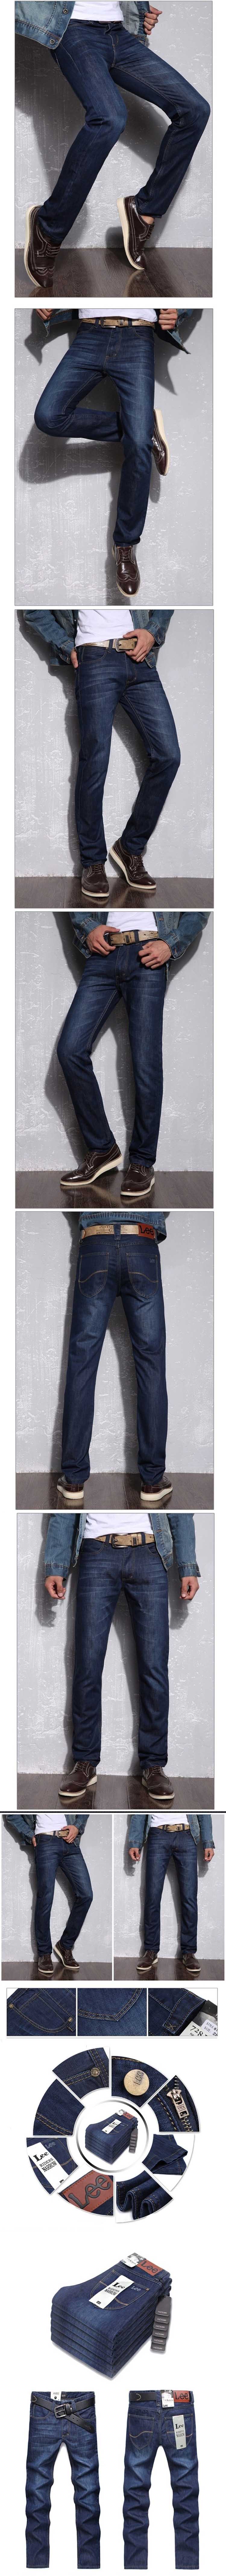 jual celana jeans panjang pria merk lee, dengan desain casual dan dari bahan berkualitas sehingga nyaman digunakan, temukan koleksi celana jeans panjang pria branded hanya di store.pakaianfashionpria.com